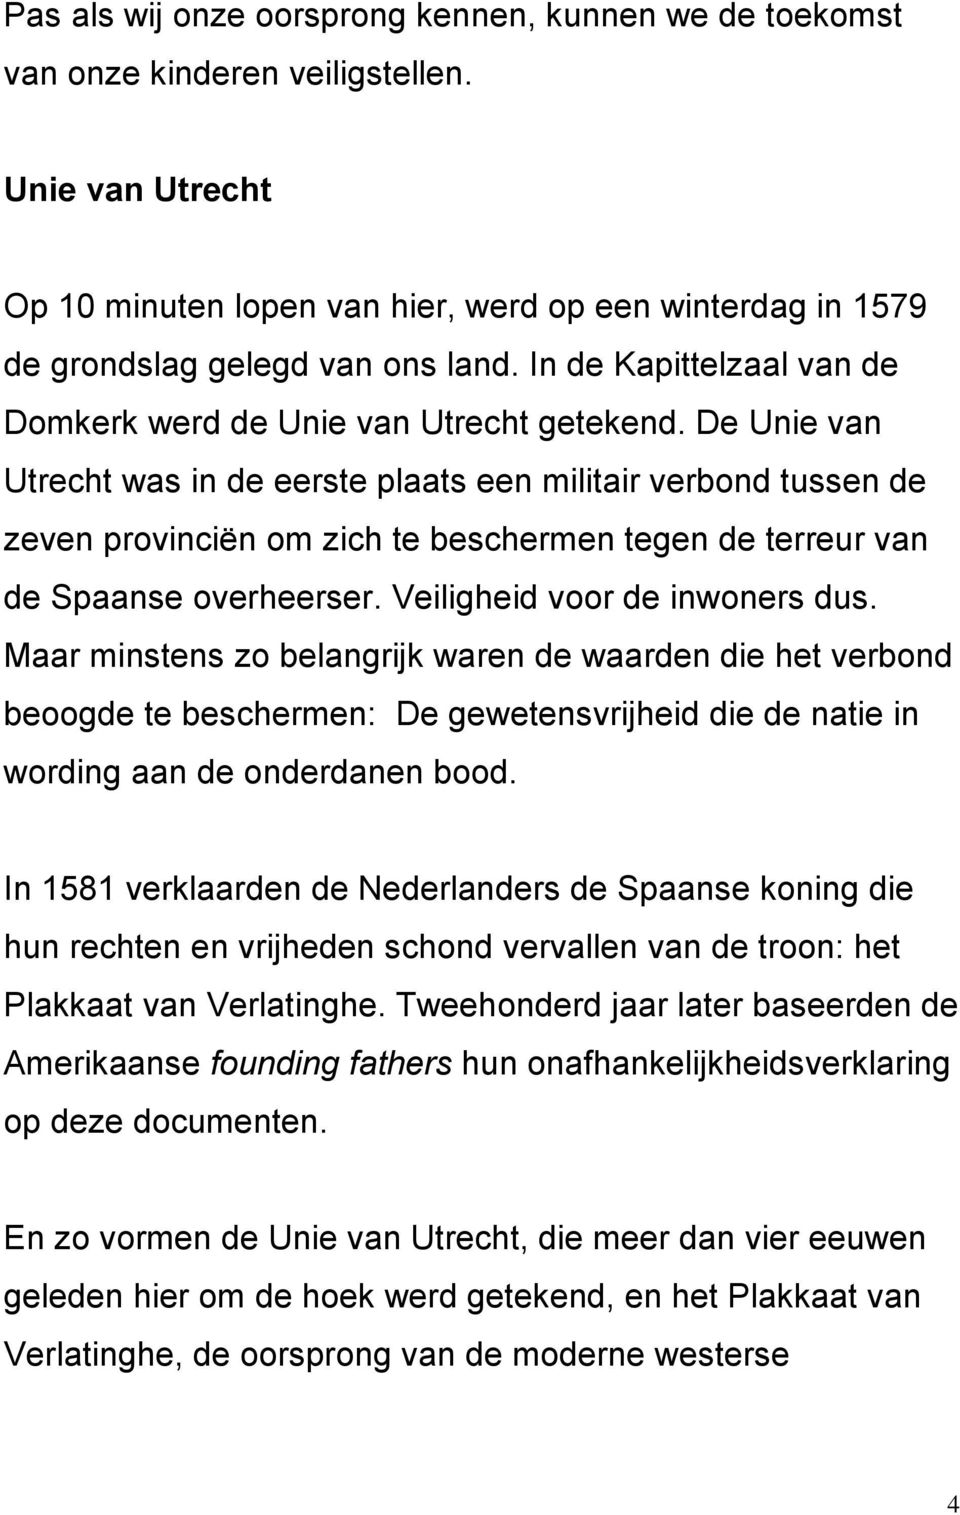 De Unie van Utrecht was in de eerste plaats een militair verbond tussen de zeven provinciën om zich te beschermen tegen de terreur van de Spaanse overheerser. Veiligheid voor de inwoners dus.